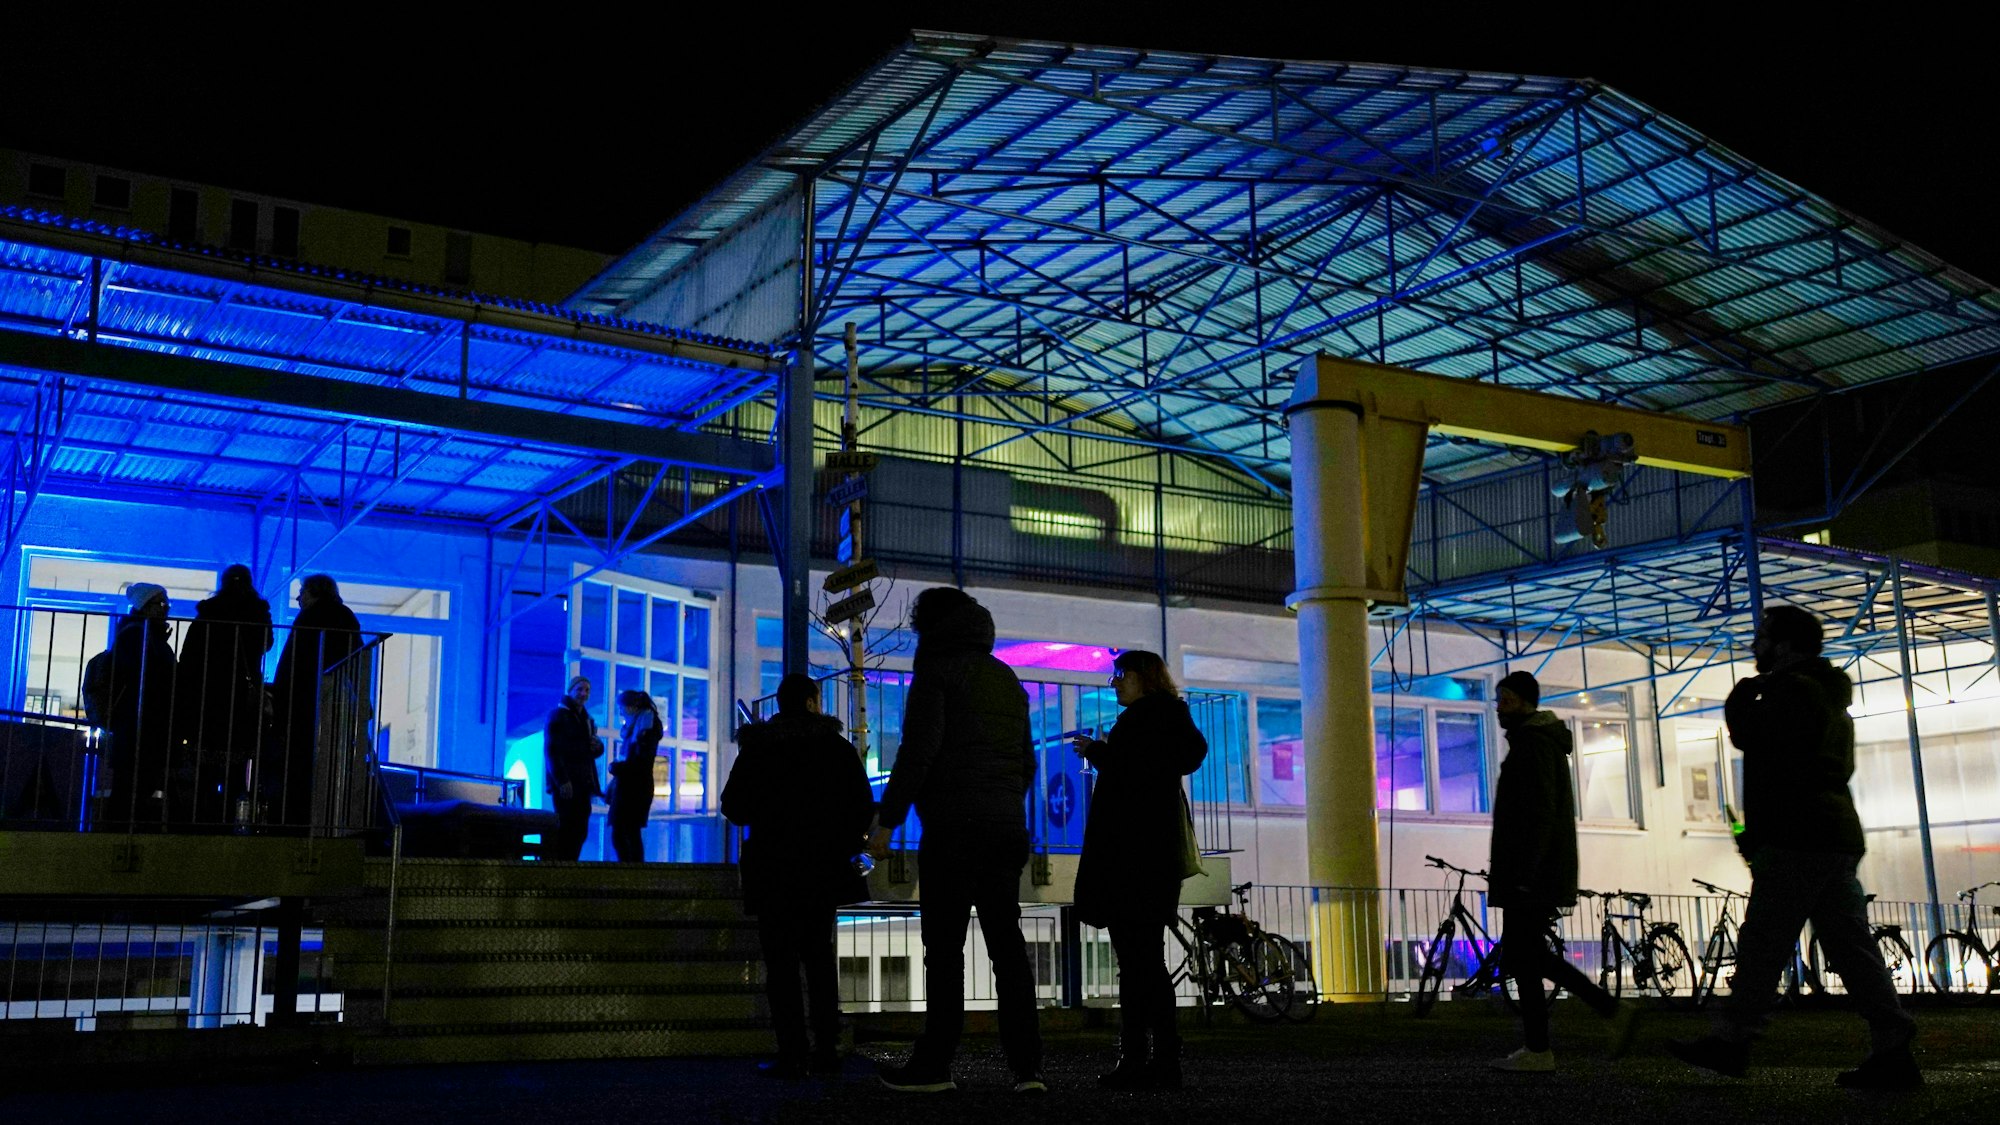 Die Spielstätte der TanzFaktur in Köln am Abend von außen fotografiert, mit bunter Beleuchtung und Gästen